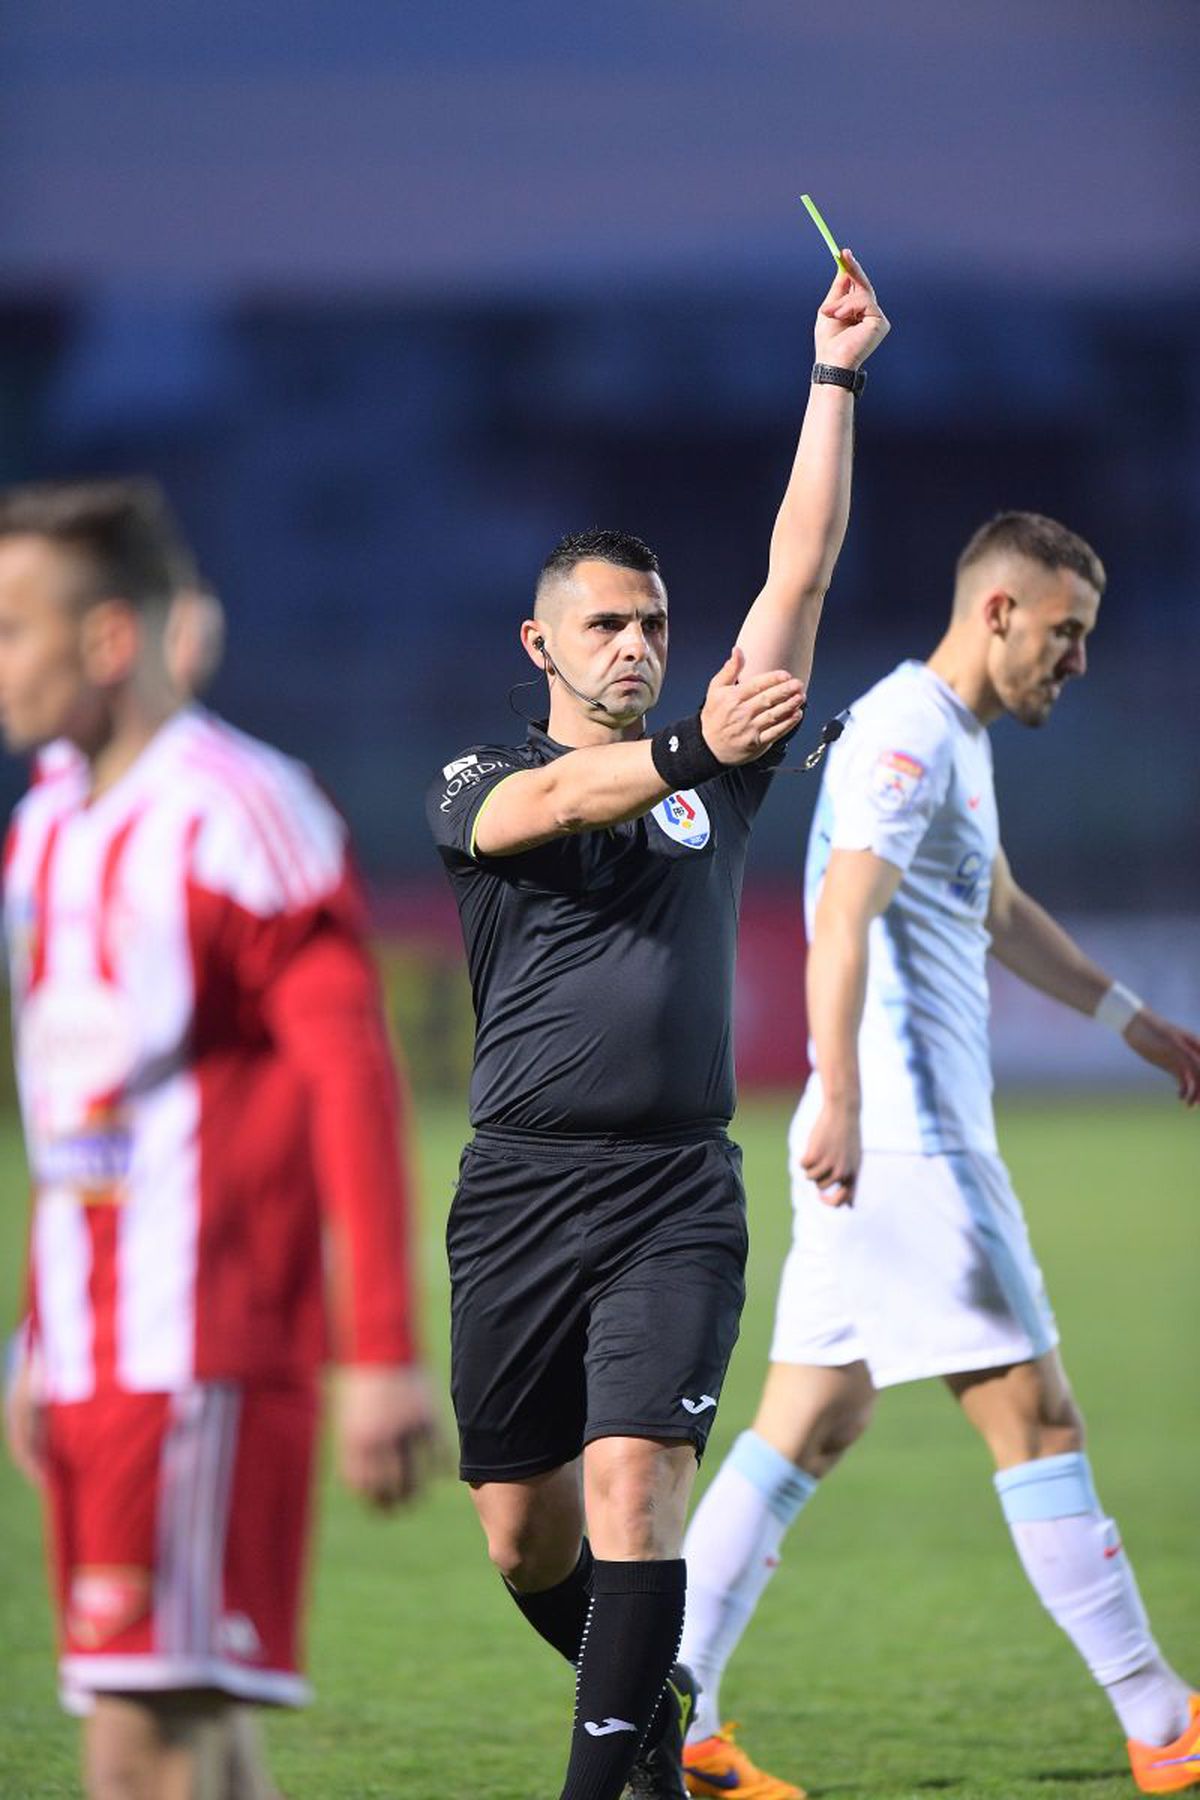 Sepsi - FCSB 1-1 » Un singur fotbalist a rămas „corigent” după remiza de la Sfântu Gheorghe + Cine sunt jucătorii care au luat cea mai mare notă